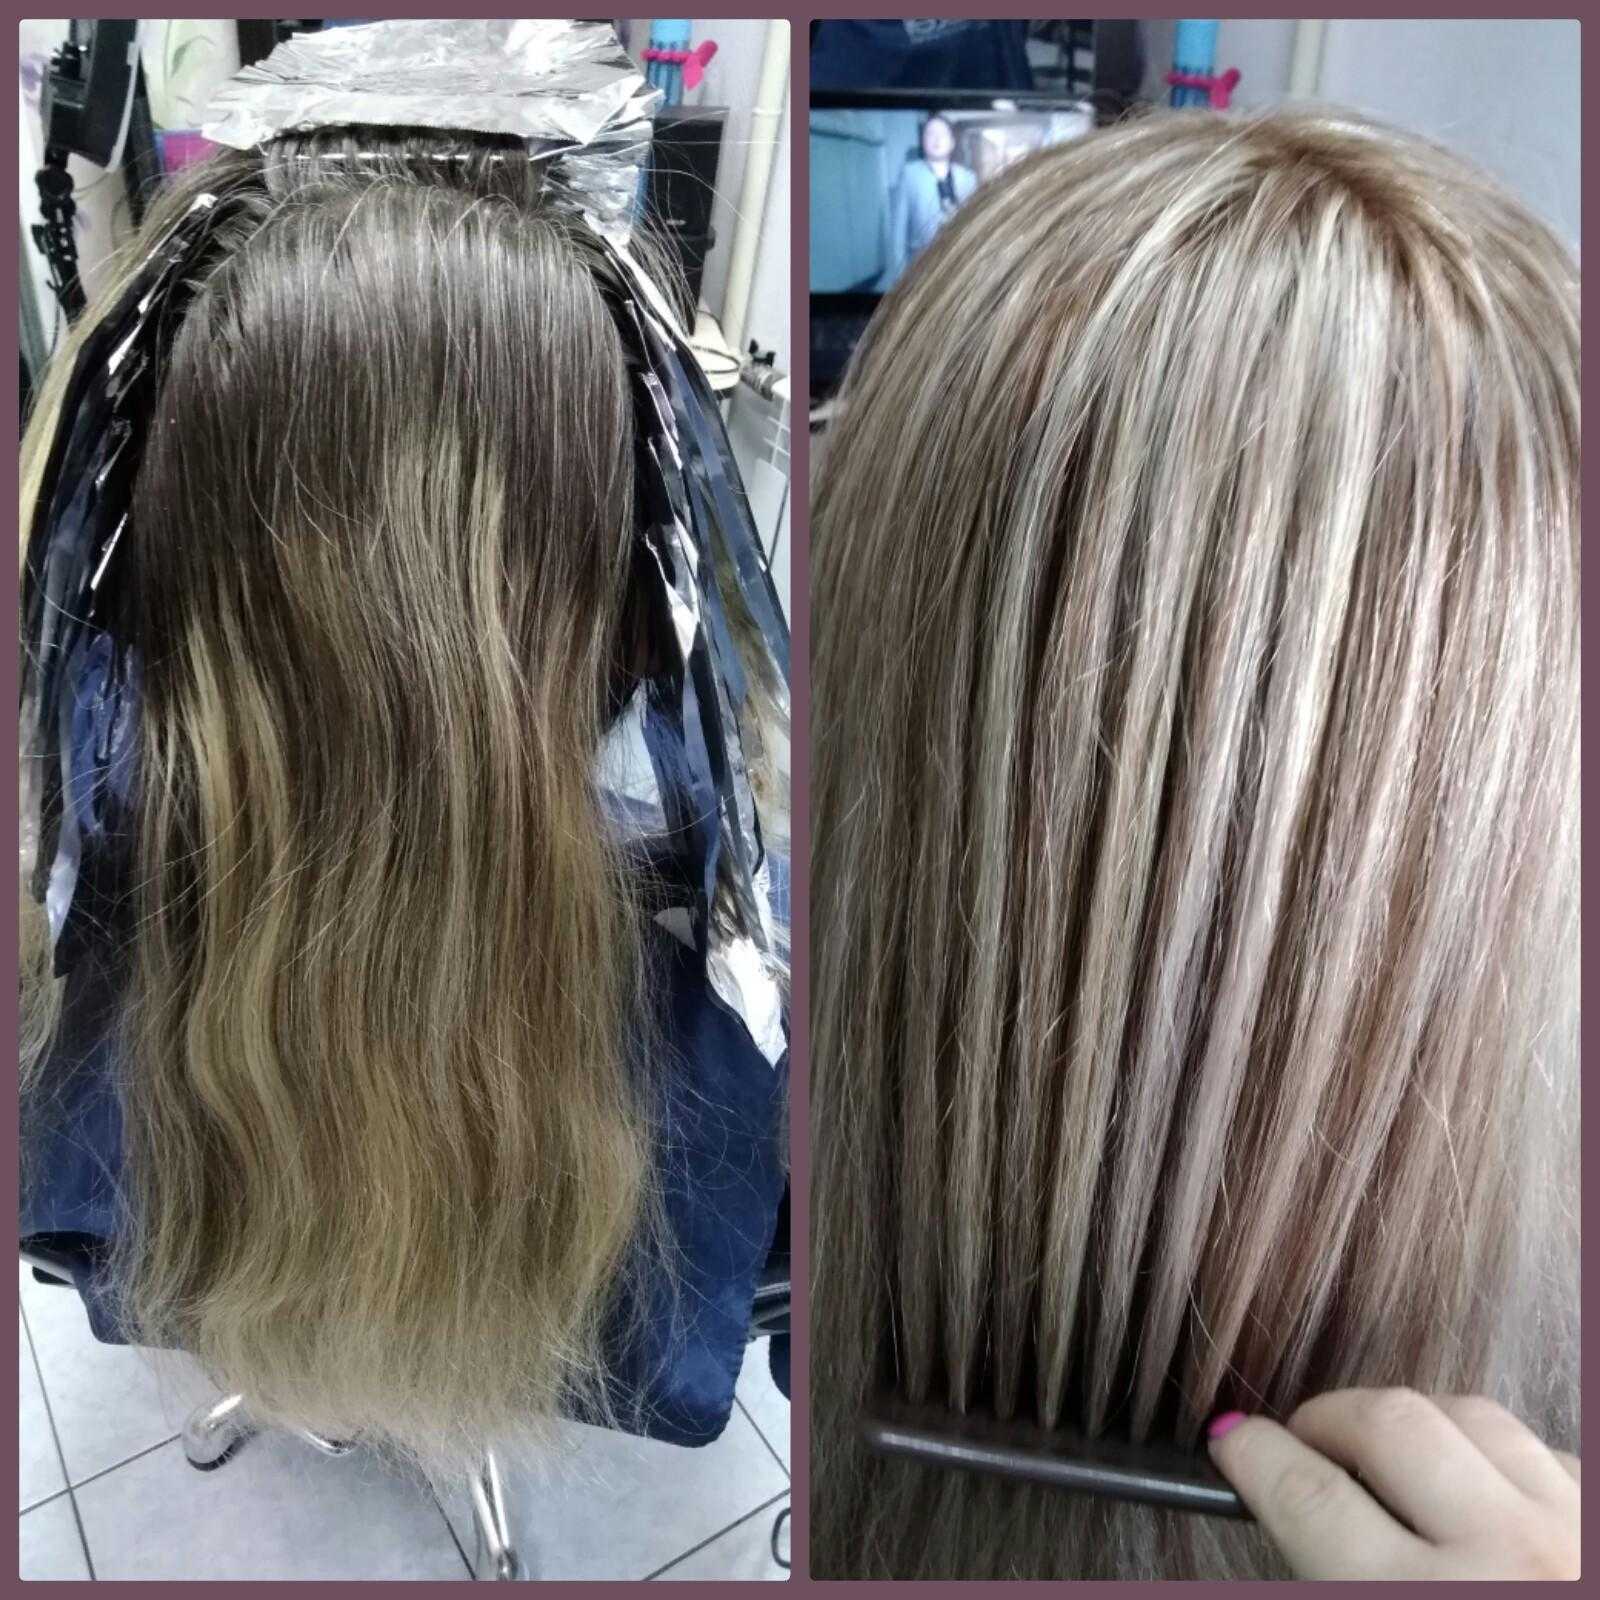 Окрашивание волос в два цвета: двухцветный окрас, как называется покраска пополам, мелирование наполовину на короткие разными